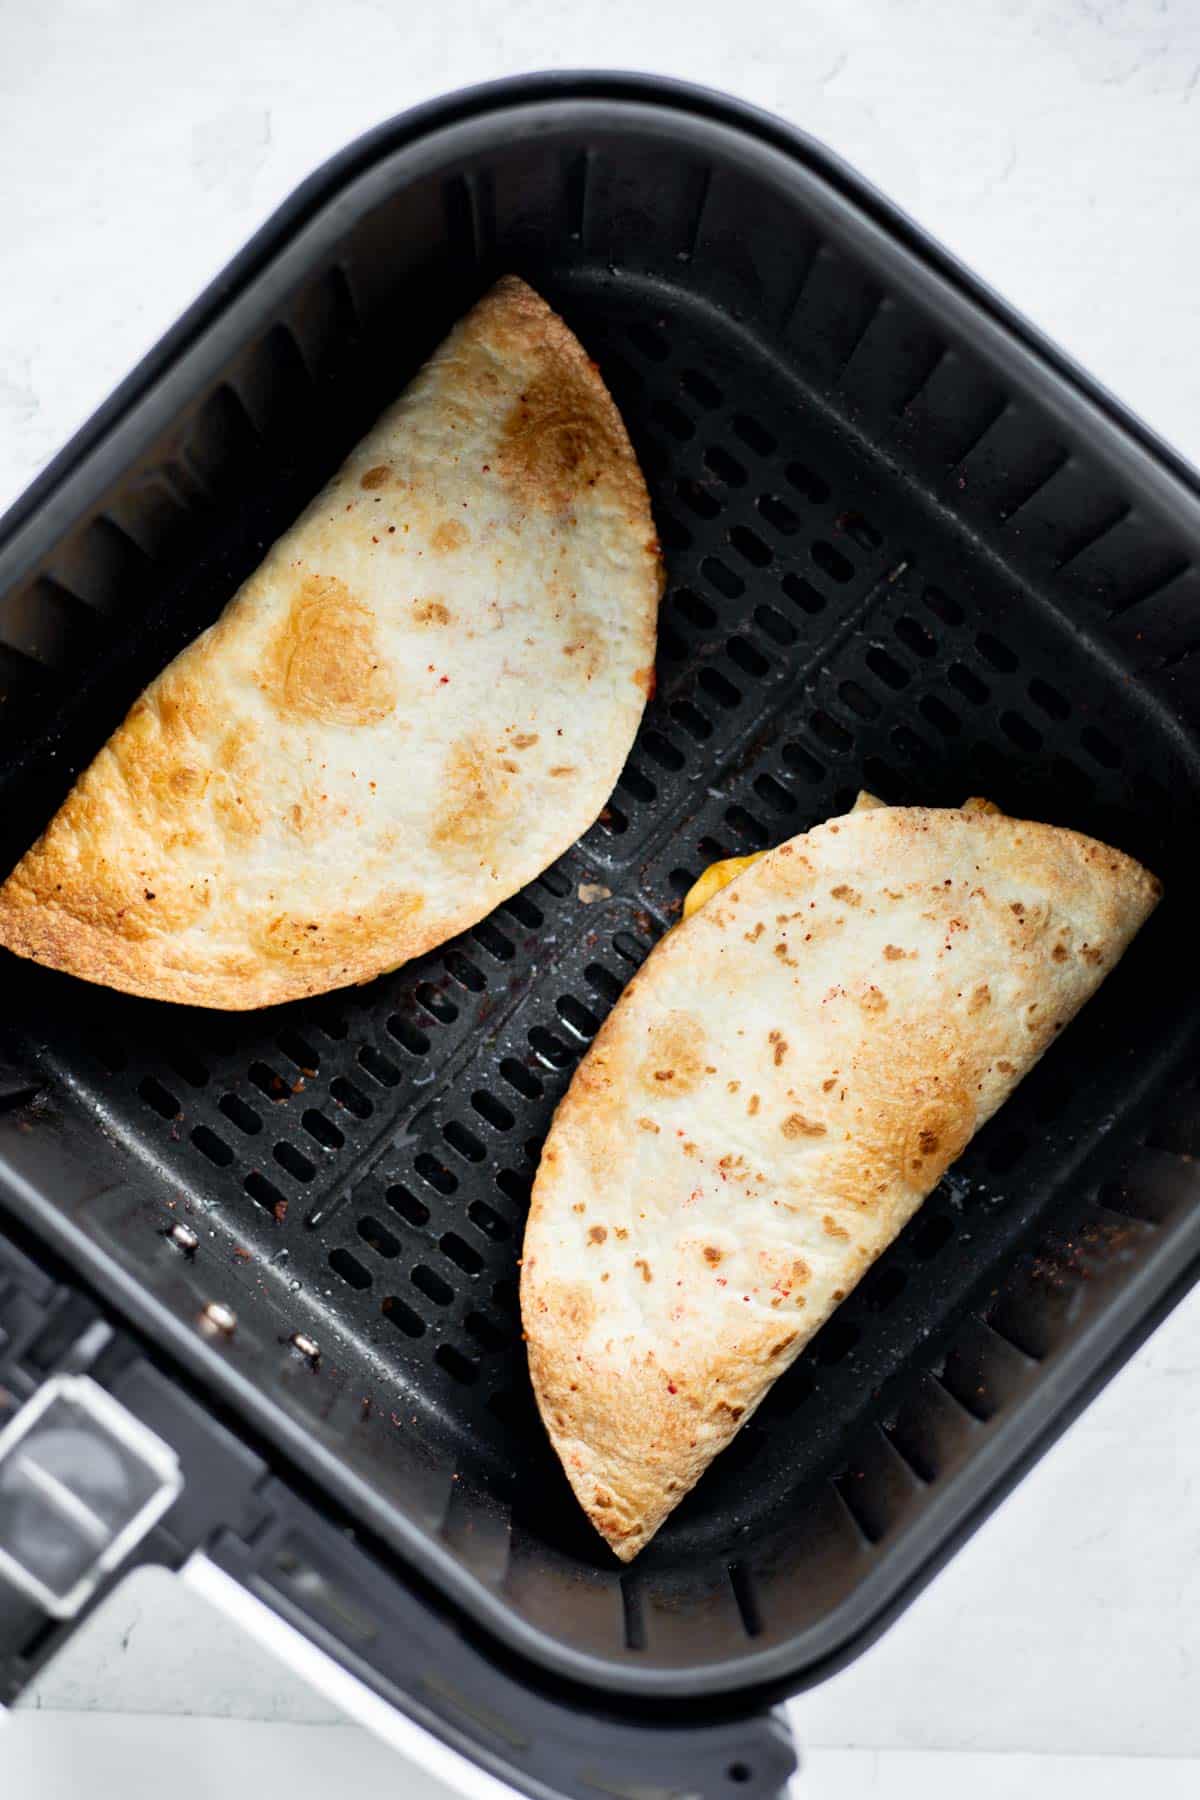 quesadillas cooked in air fryer basket.